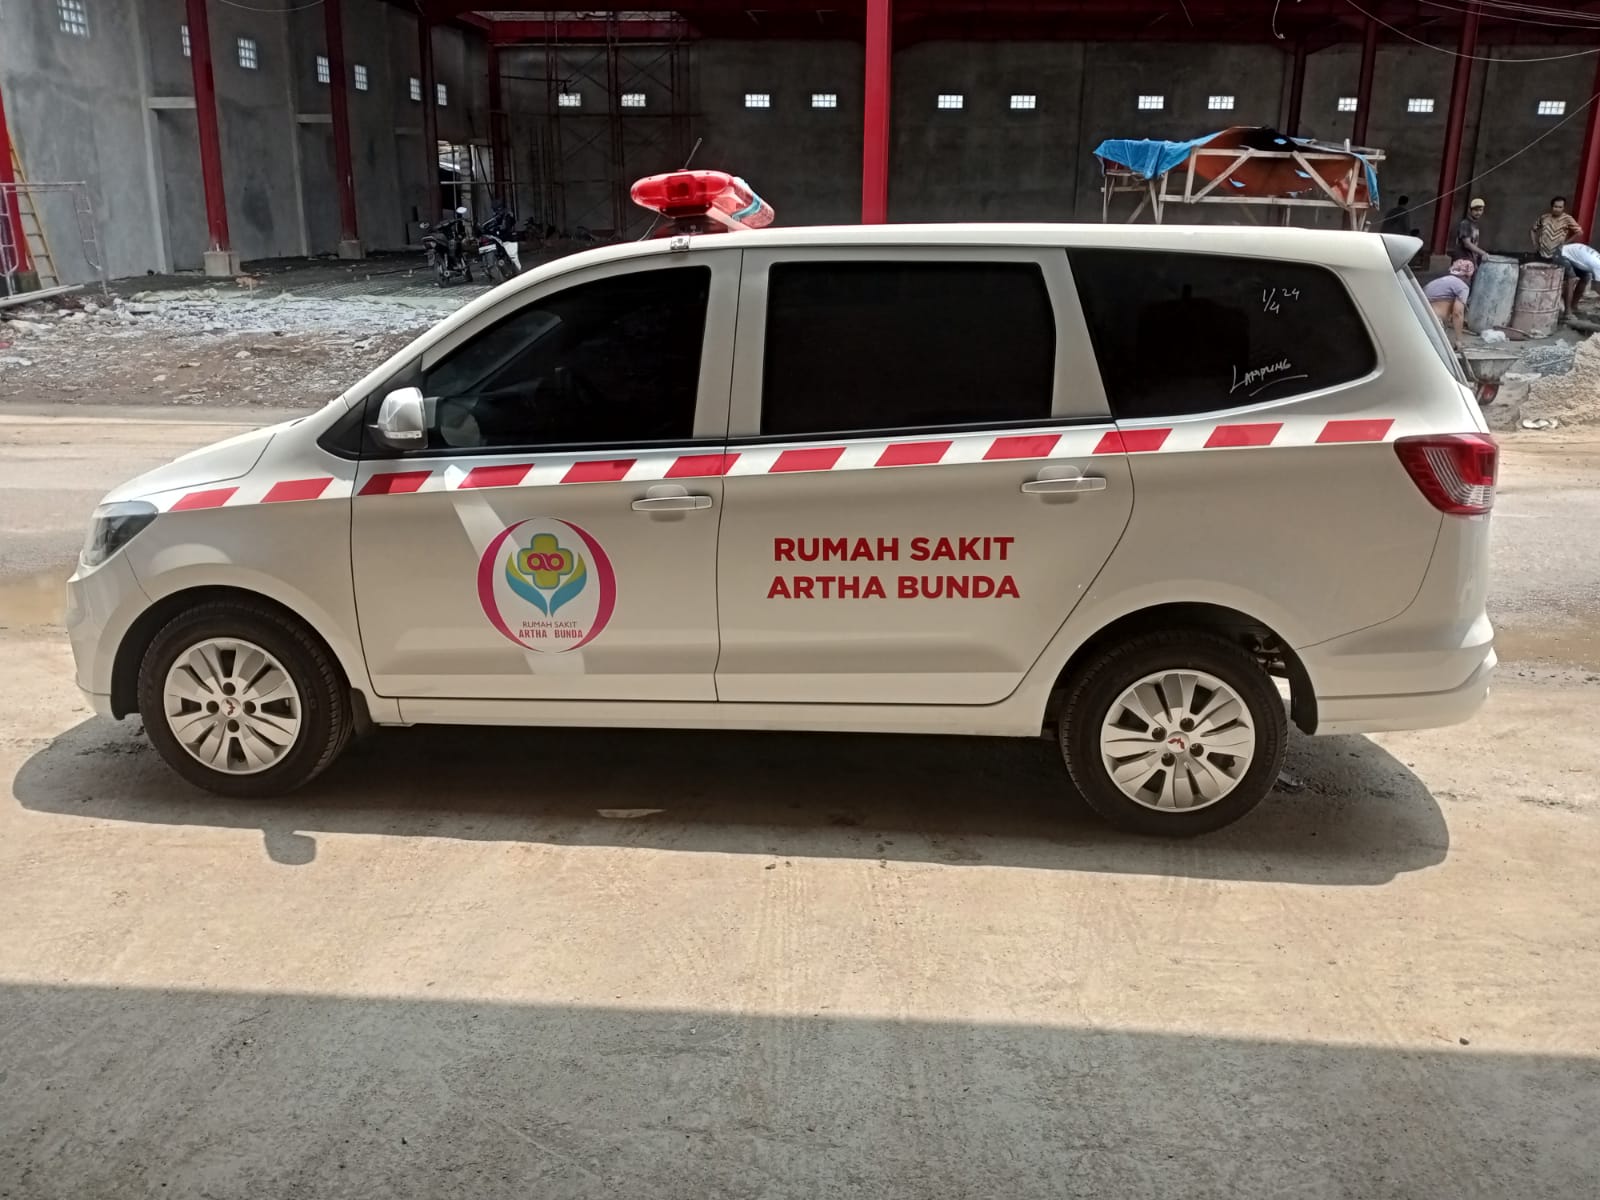 Harga Karoseri Modifikasi Ambulance Berkualitas Surabaya